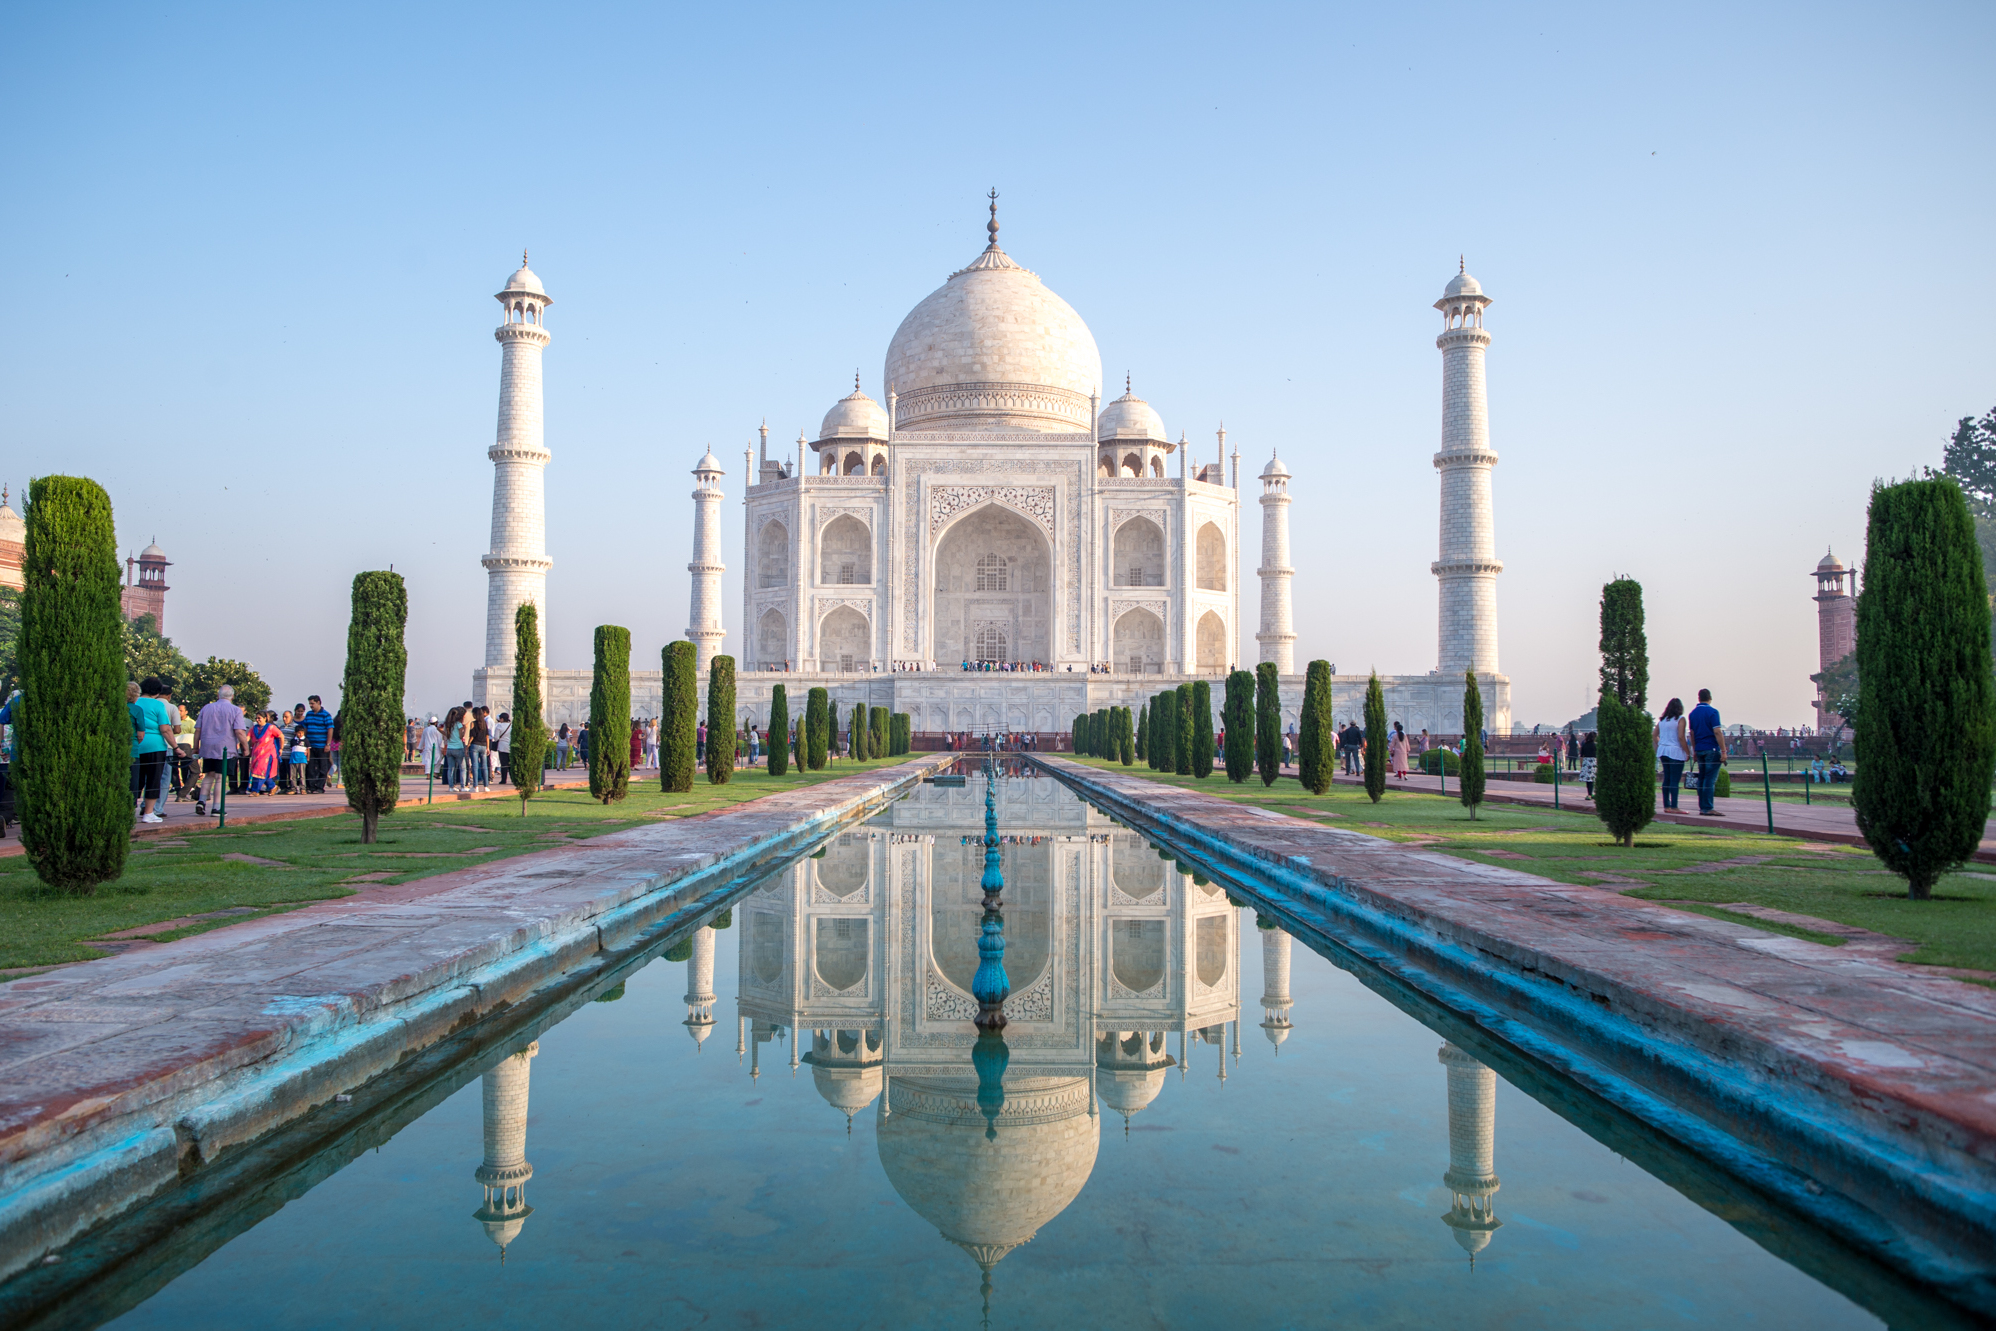 原创 印度最著名的建筑,世界新七大奇迹之一,被誉为"完美建筑"